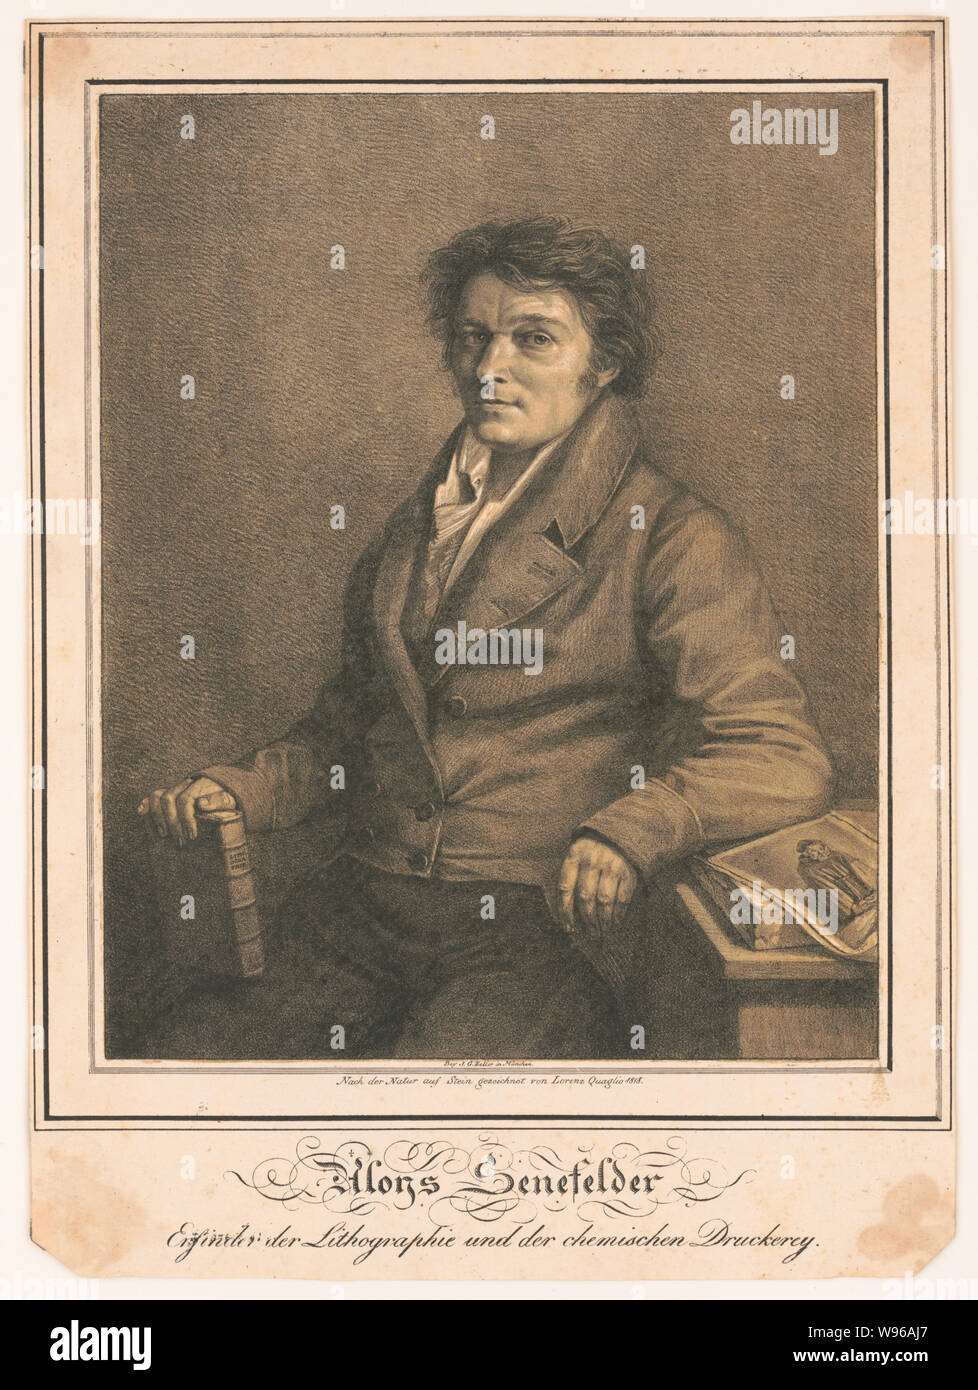 Aloys Senefelder--Enfinder der Lithographic und der chemischen Druckerey / Nach der Natur auf Stein gezeichnet von Lorenz Quaglio 1818. Stock Photo